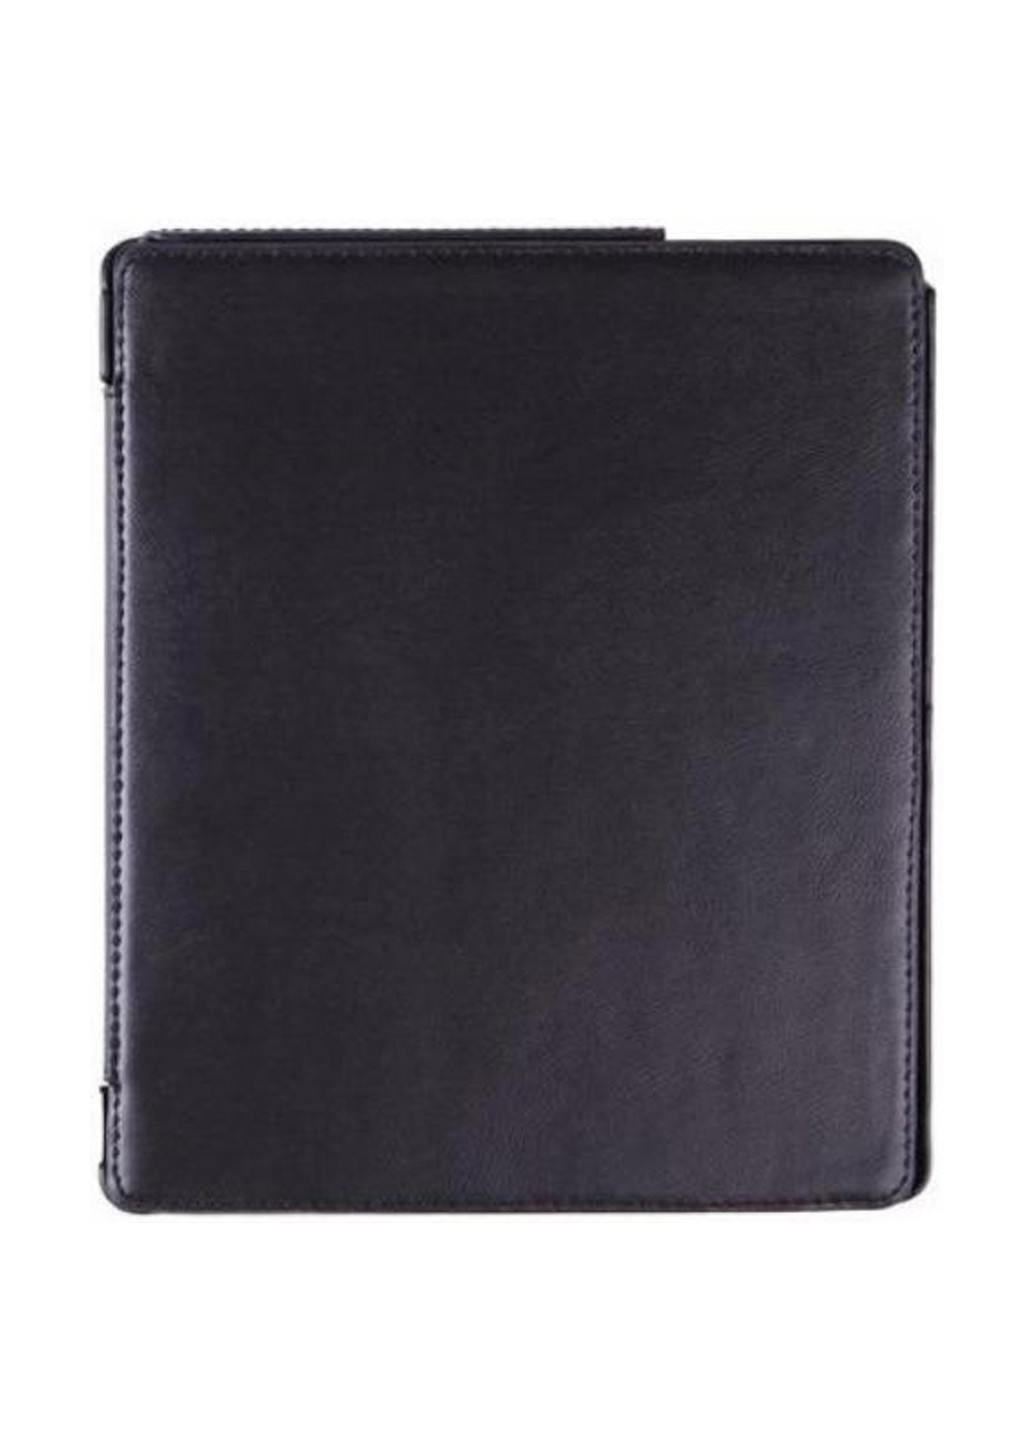 Чехол Premium для PocketBook 840 black (4821784622003) Airon premium для электронной книги pocketbook 840 black (4821784622003) (158554732)